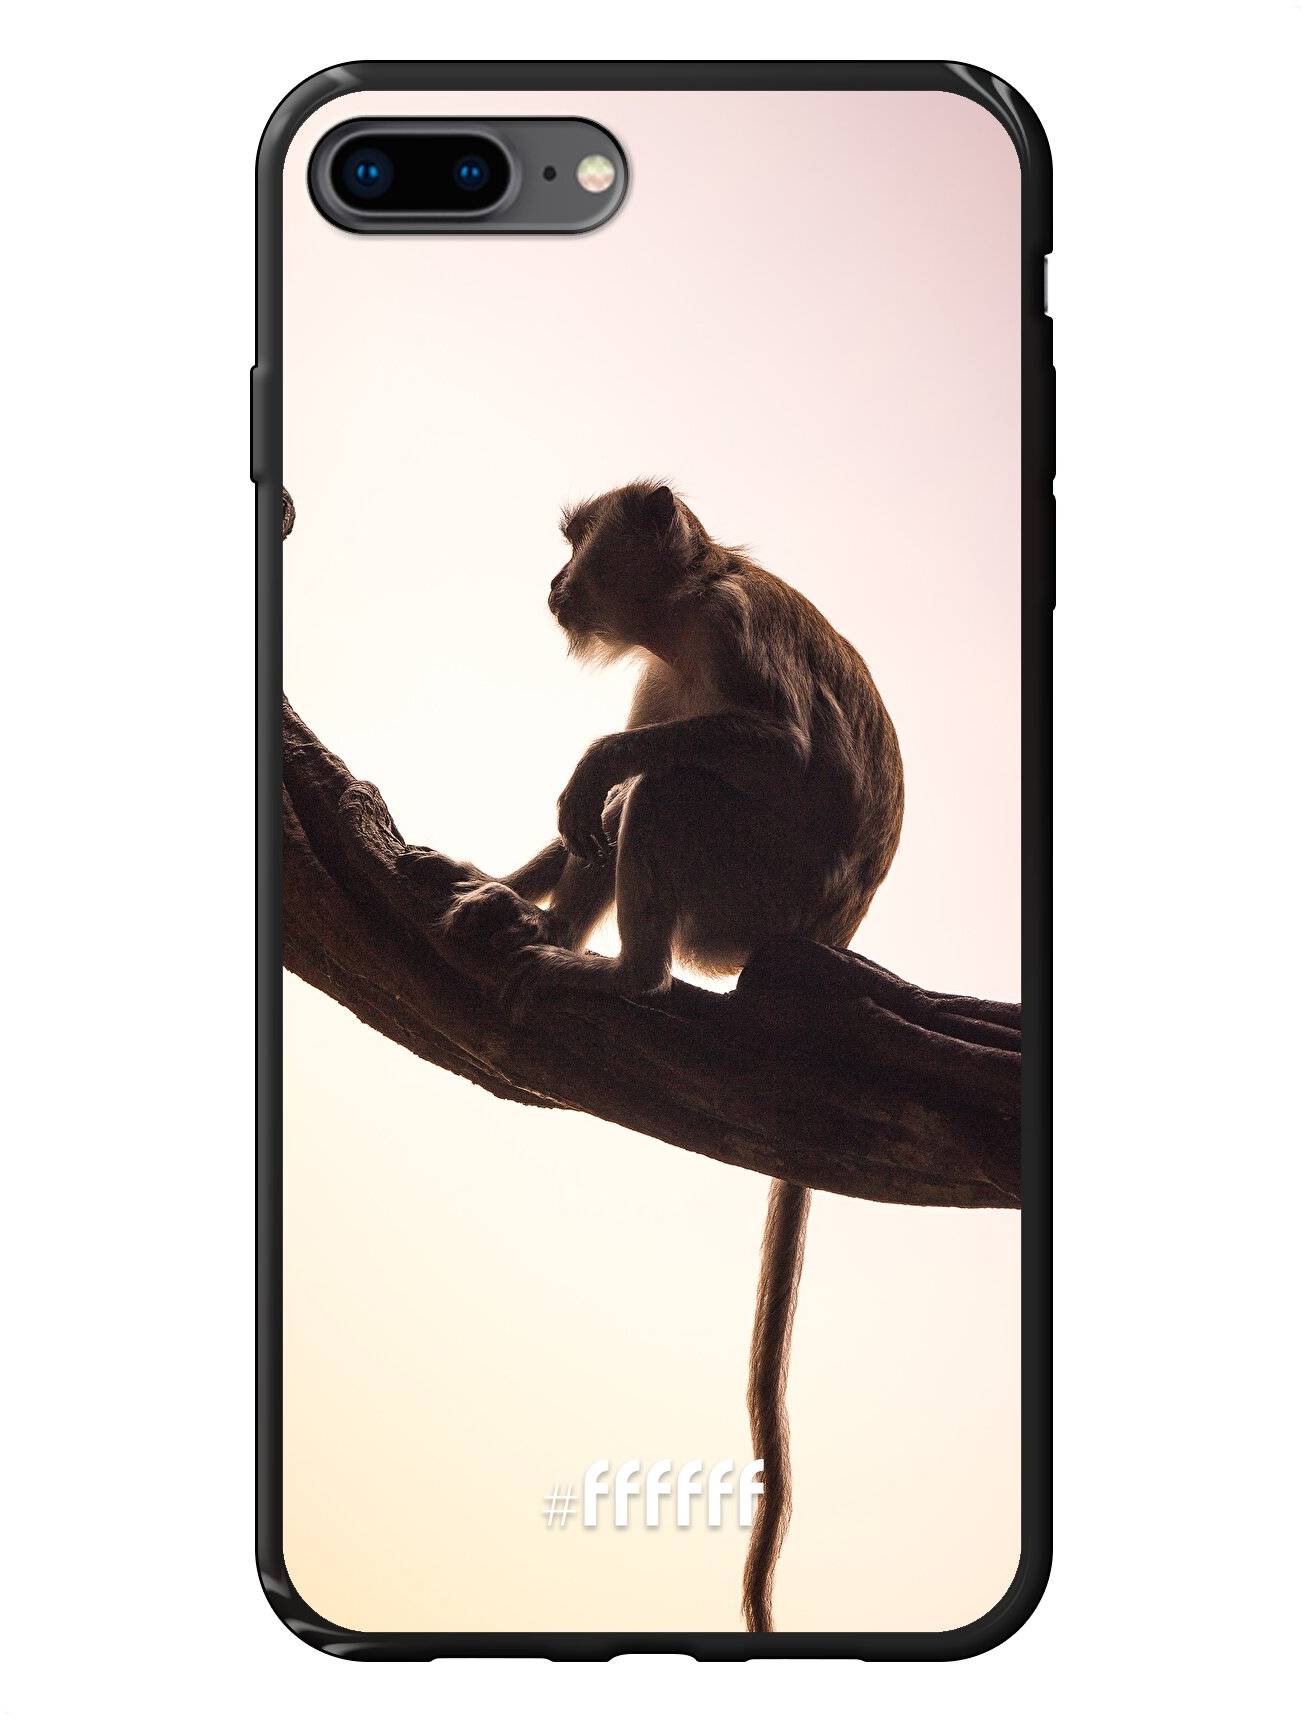 Macaque iPhone 7 Plus